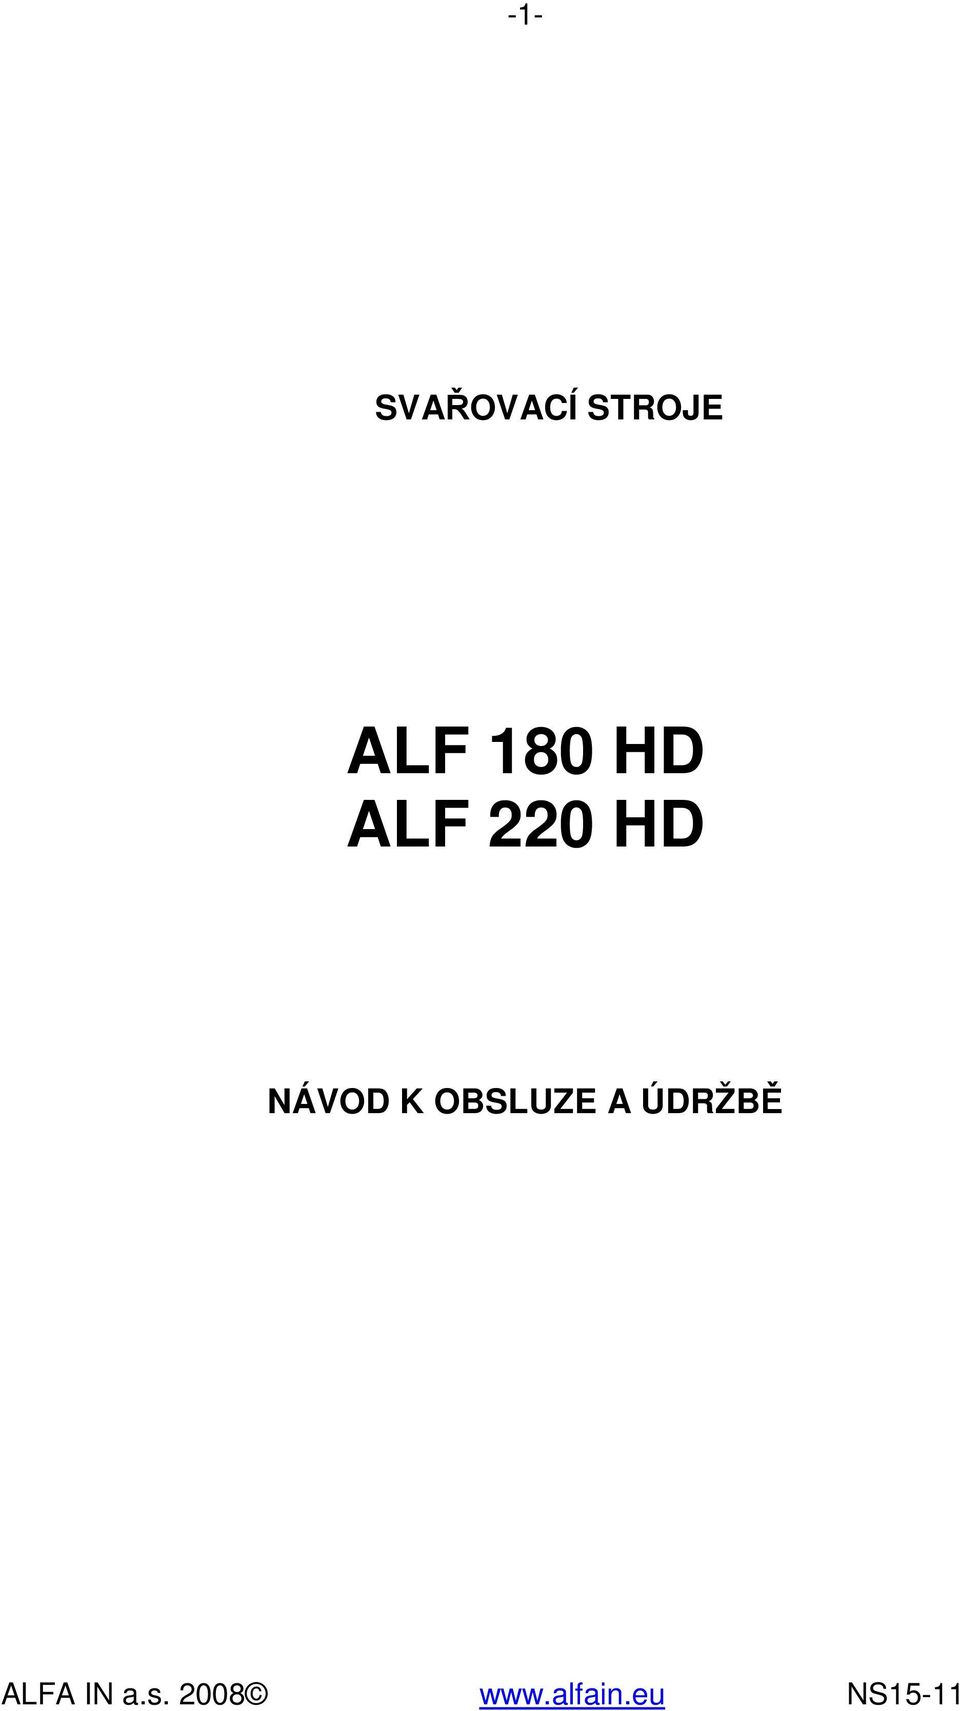 HD ALF 220 HD